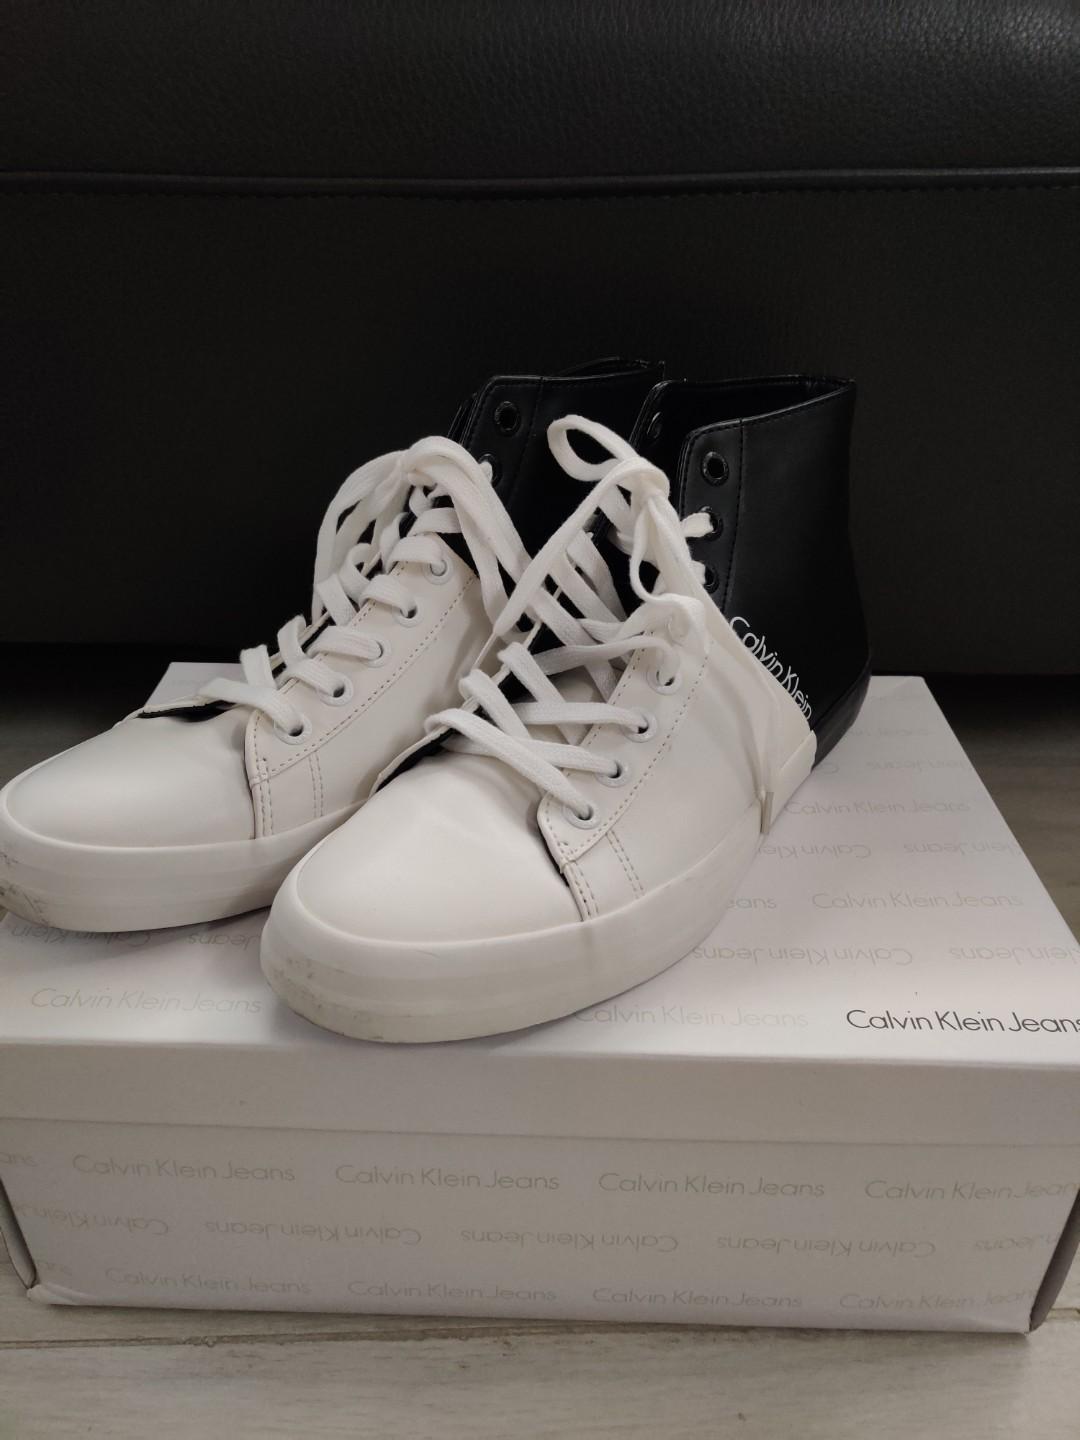 calvin klein shoes 2019